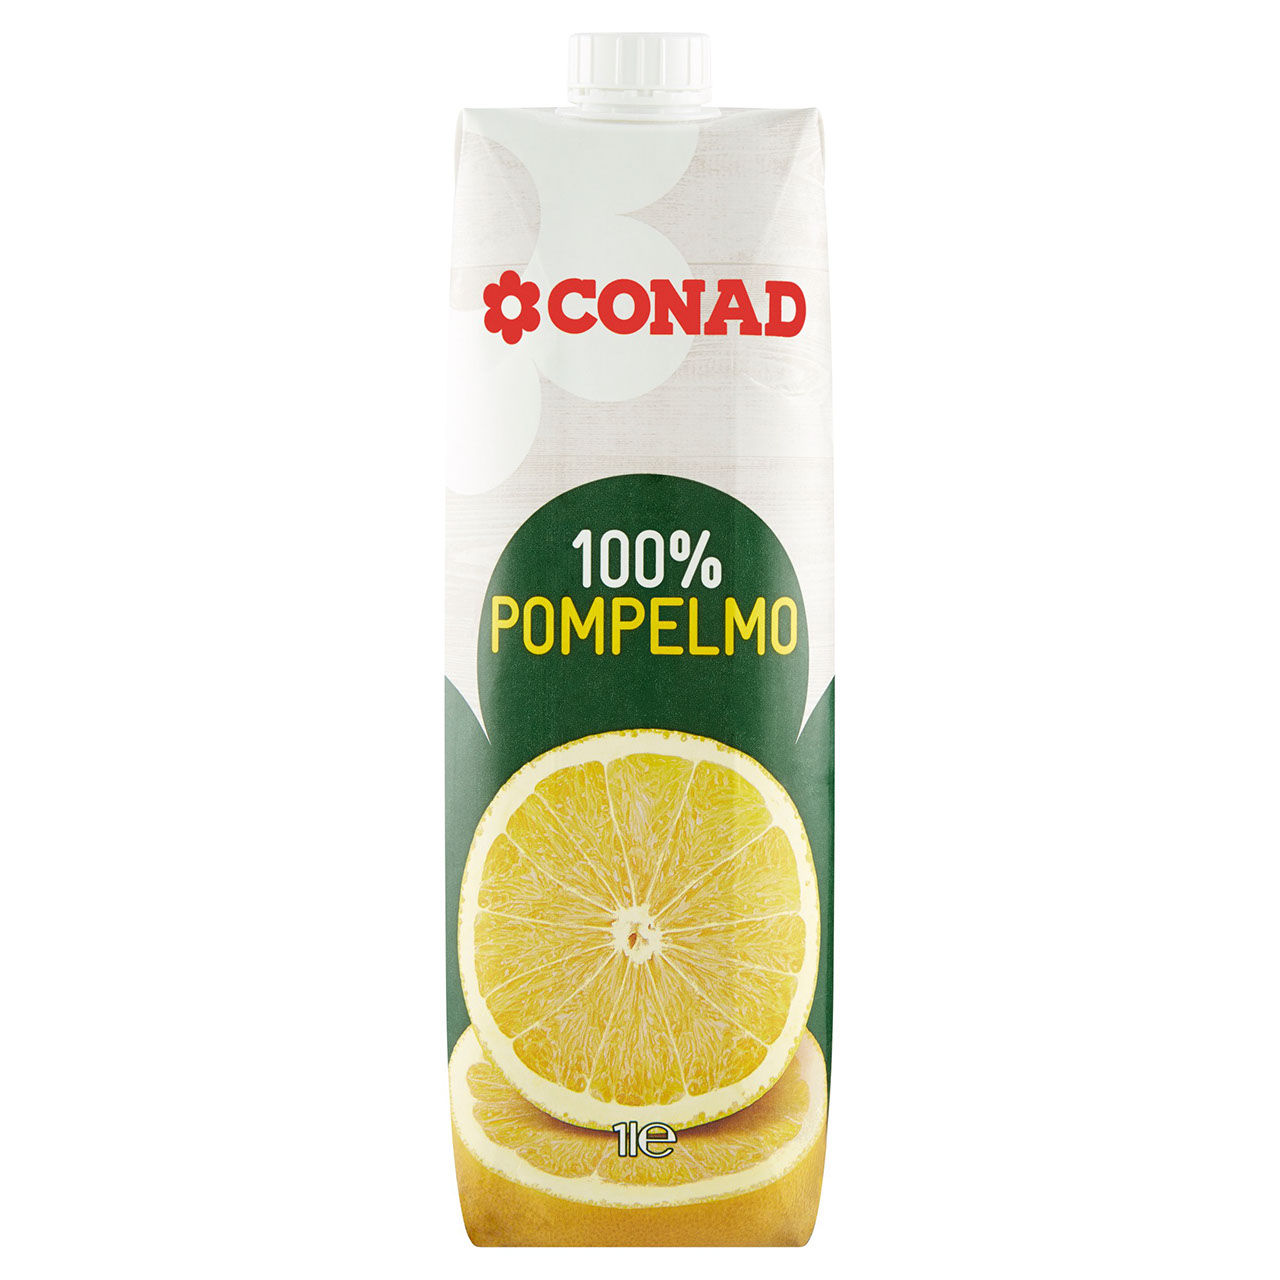 100% Pompelmo 1 l Conad in vendita online